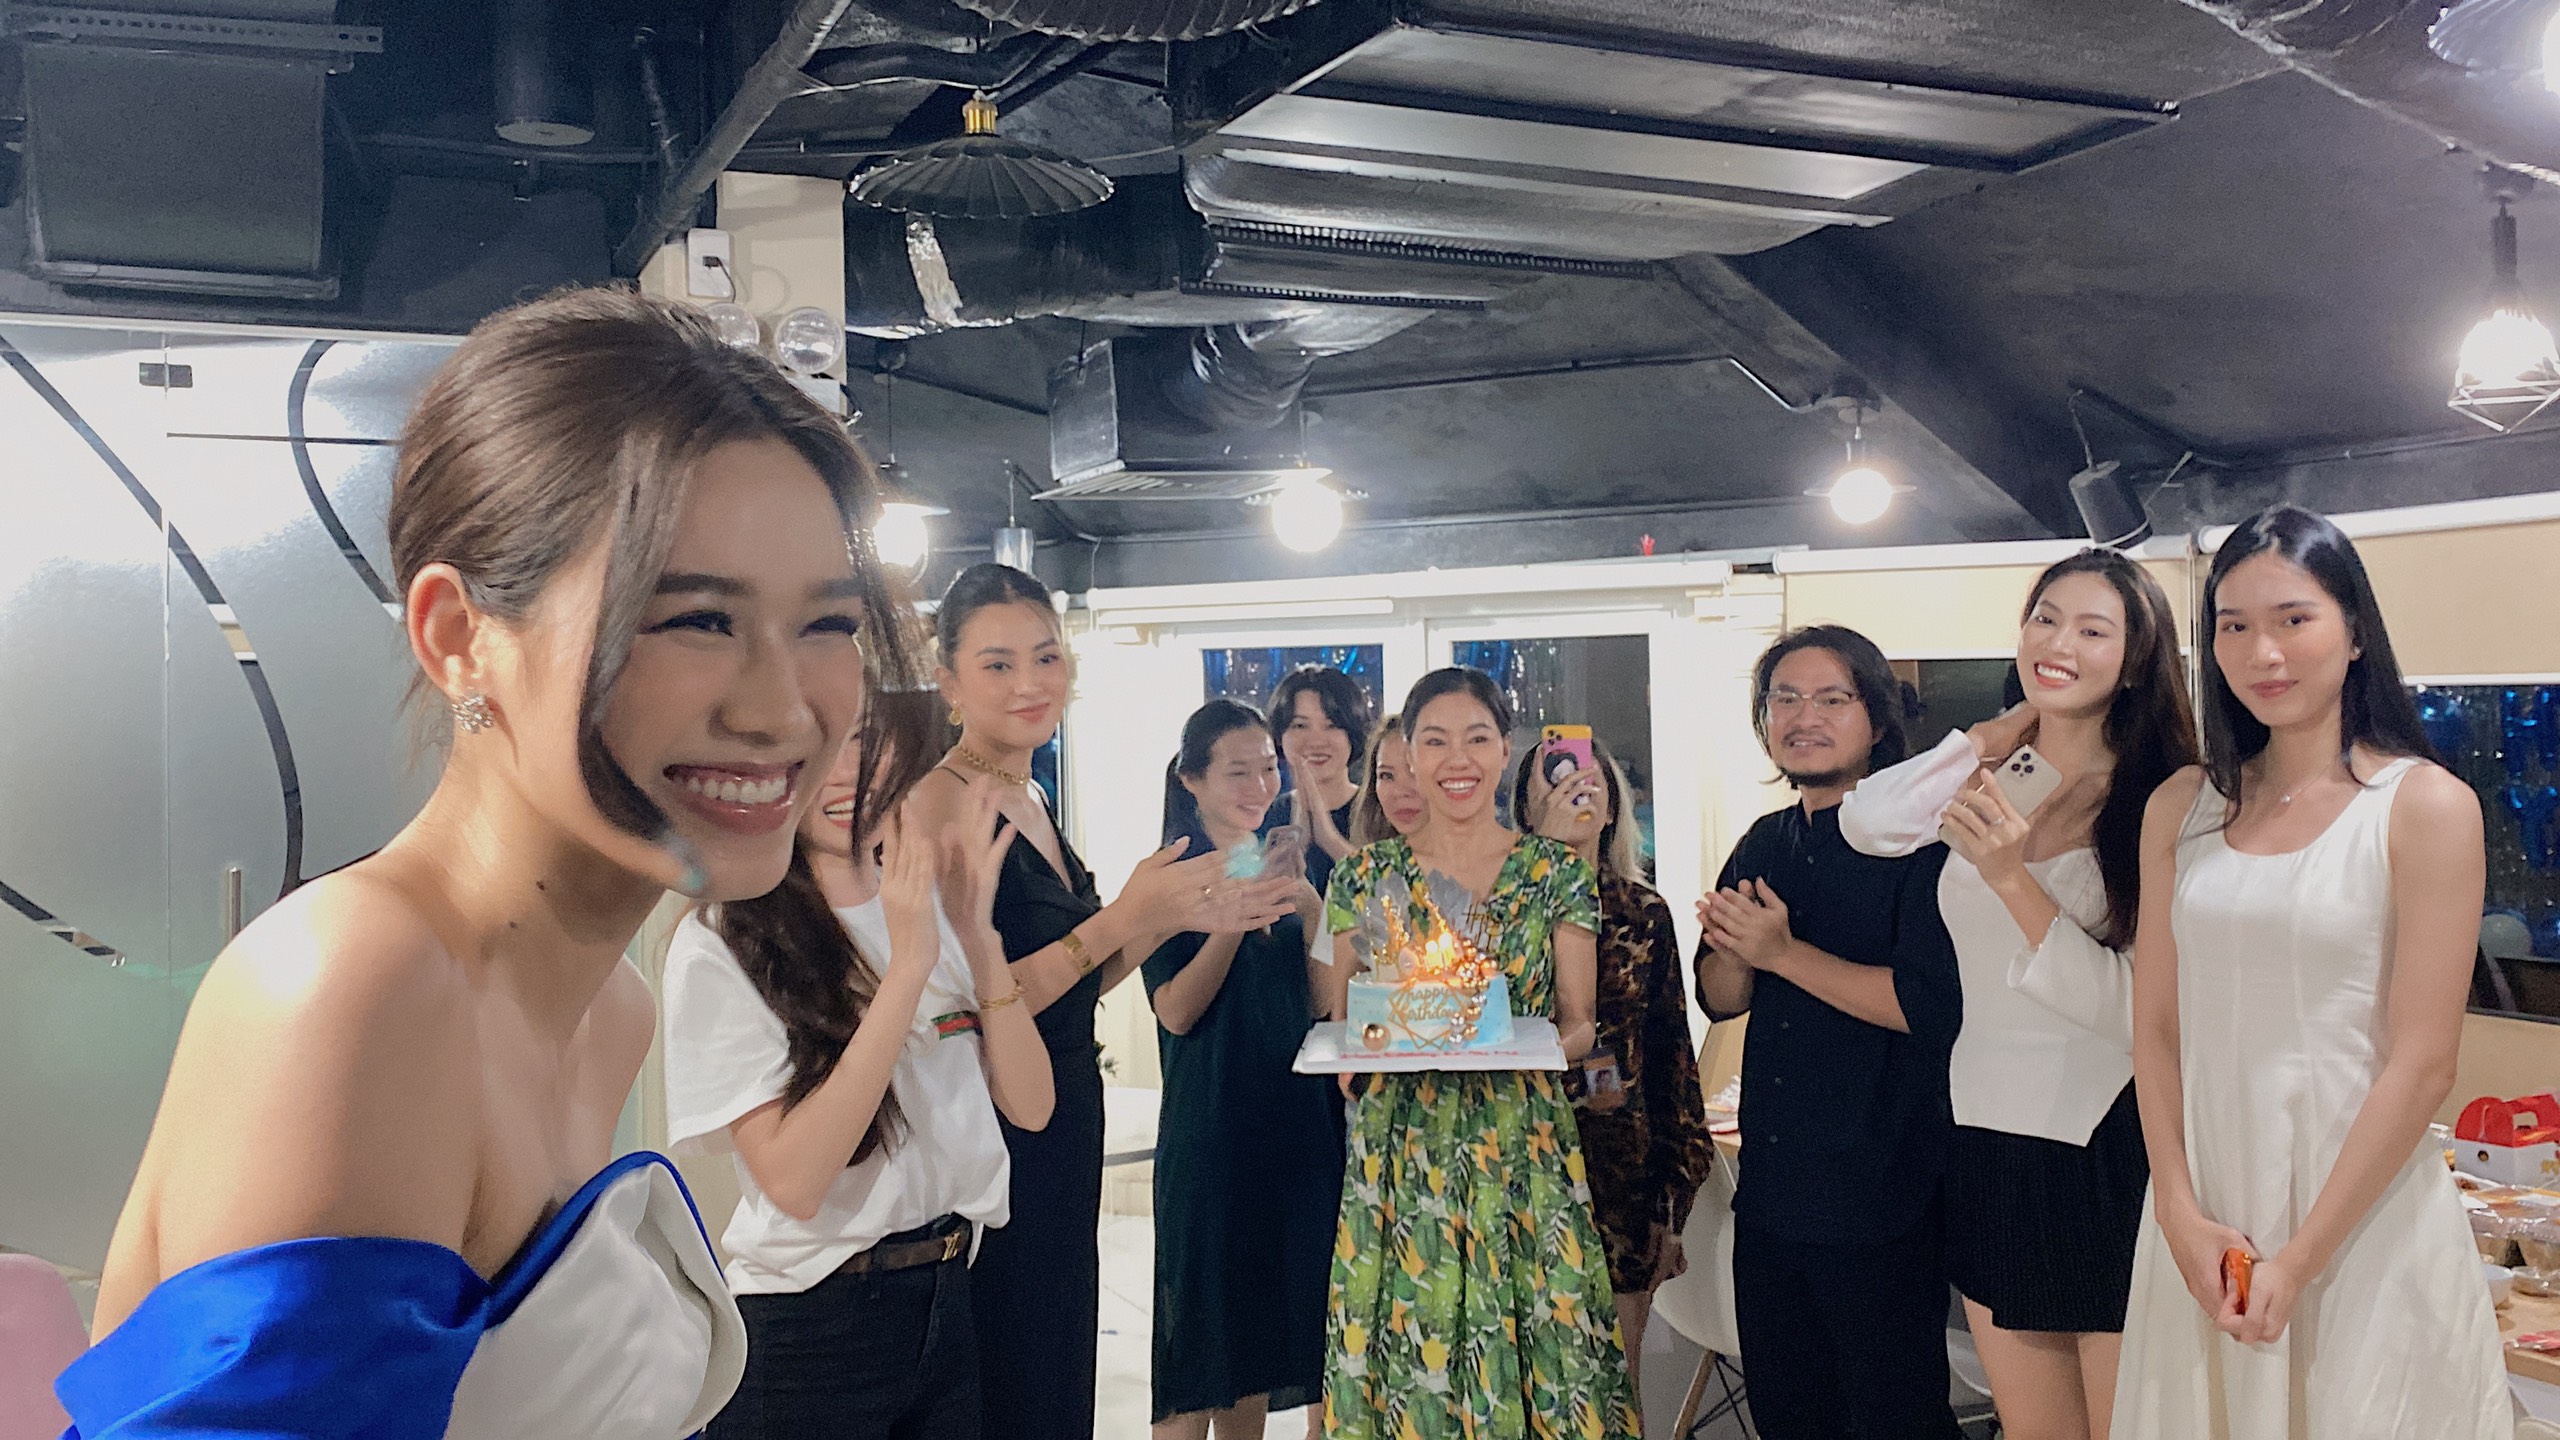 Hoa‌ ‌hậu‌ ‌Tiểu‌ ‌Vy‌ ‌“lột”‌ ‌trang‌ ‌sức‌ ‌hàng‌ ‌hiệu‌ ‌tặng‌ ‌sinh‌ ‌nhật‌ ‌Đỗ‌ ‌Hà‌ ‌ ‌